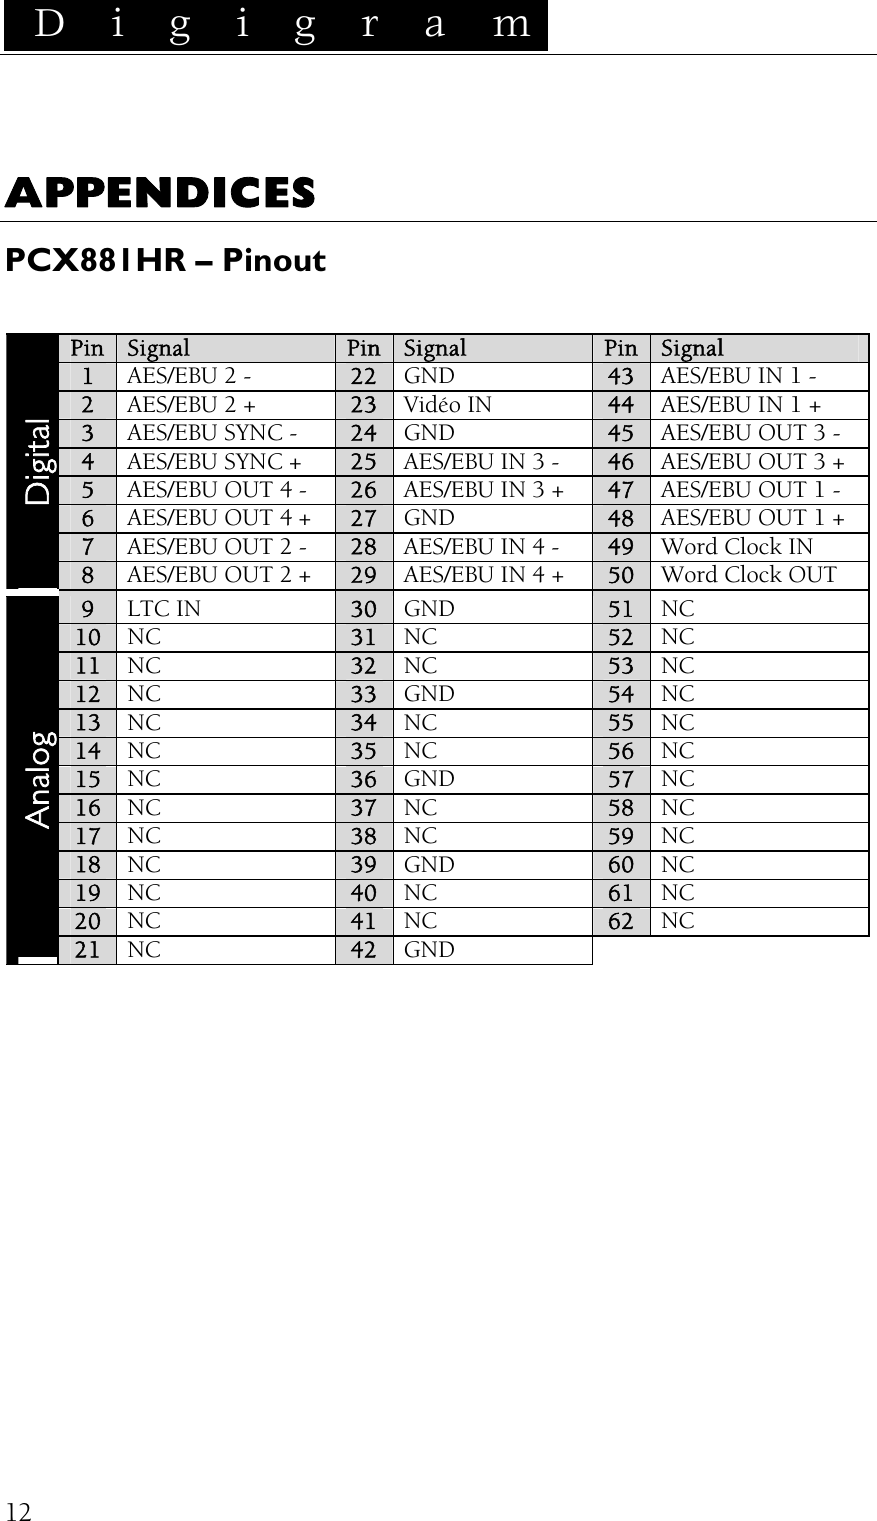  D i g i g r a m    12APPENDICES PCX881HR – Pinout  Pin Signal  Pin  Signal Pin  Signal 1 AES/EBU 2 -  22  GND  43  AES/EBU IN 1 - 2 AES/EBU 2 + 23  Vidéo IN  44  AES/EBU IN 1 + 3 AES/EBU SYNC - 24  GND  45  AES/EBU OUT 3 - 4 AES/EBU SYNC + 25  AES/EBU IN 3 -  46  AES/EBU OUT 3 + 5 AES/EBU OUT 4 - 26  AES/EBU IN 3 +  47  AES/EBU OUT 1 - 6 AES/EBU OUT 4 + 27  GND  48  AES/EBU OUT 1 + 7 AES/EBU OUT 2 - 28  AES/EBU IN 4 -  49  Word Clock IN Digital 8 AES/EBU OUT 2 + 29  AES/EBU IN 4 +  50  Word Clock OUT 9 LTC IN 30  GND  51  NC 10 NC 31  NC  52  NC 11 NC 32  NC  53  NC 12 NC 33  GND  54  NC 13 NC 34  NC  55  NC 14 NC  35  NC  56  NC 15 NC  36  GND  57  NC 16  NC 37  NC  58  NC 17  NC 38  NC  59  NC 18  NC  39  GND  60  NC 19  NC  40  NC  61  NC 20  NC  41  NC  62  NC Analog 21  NC  42  GND  